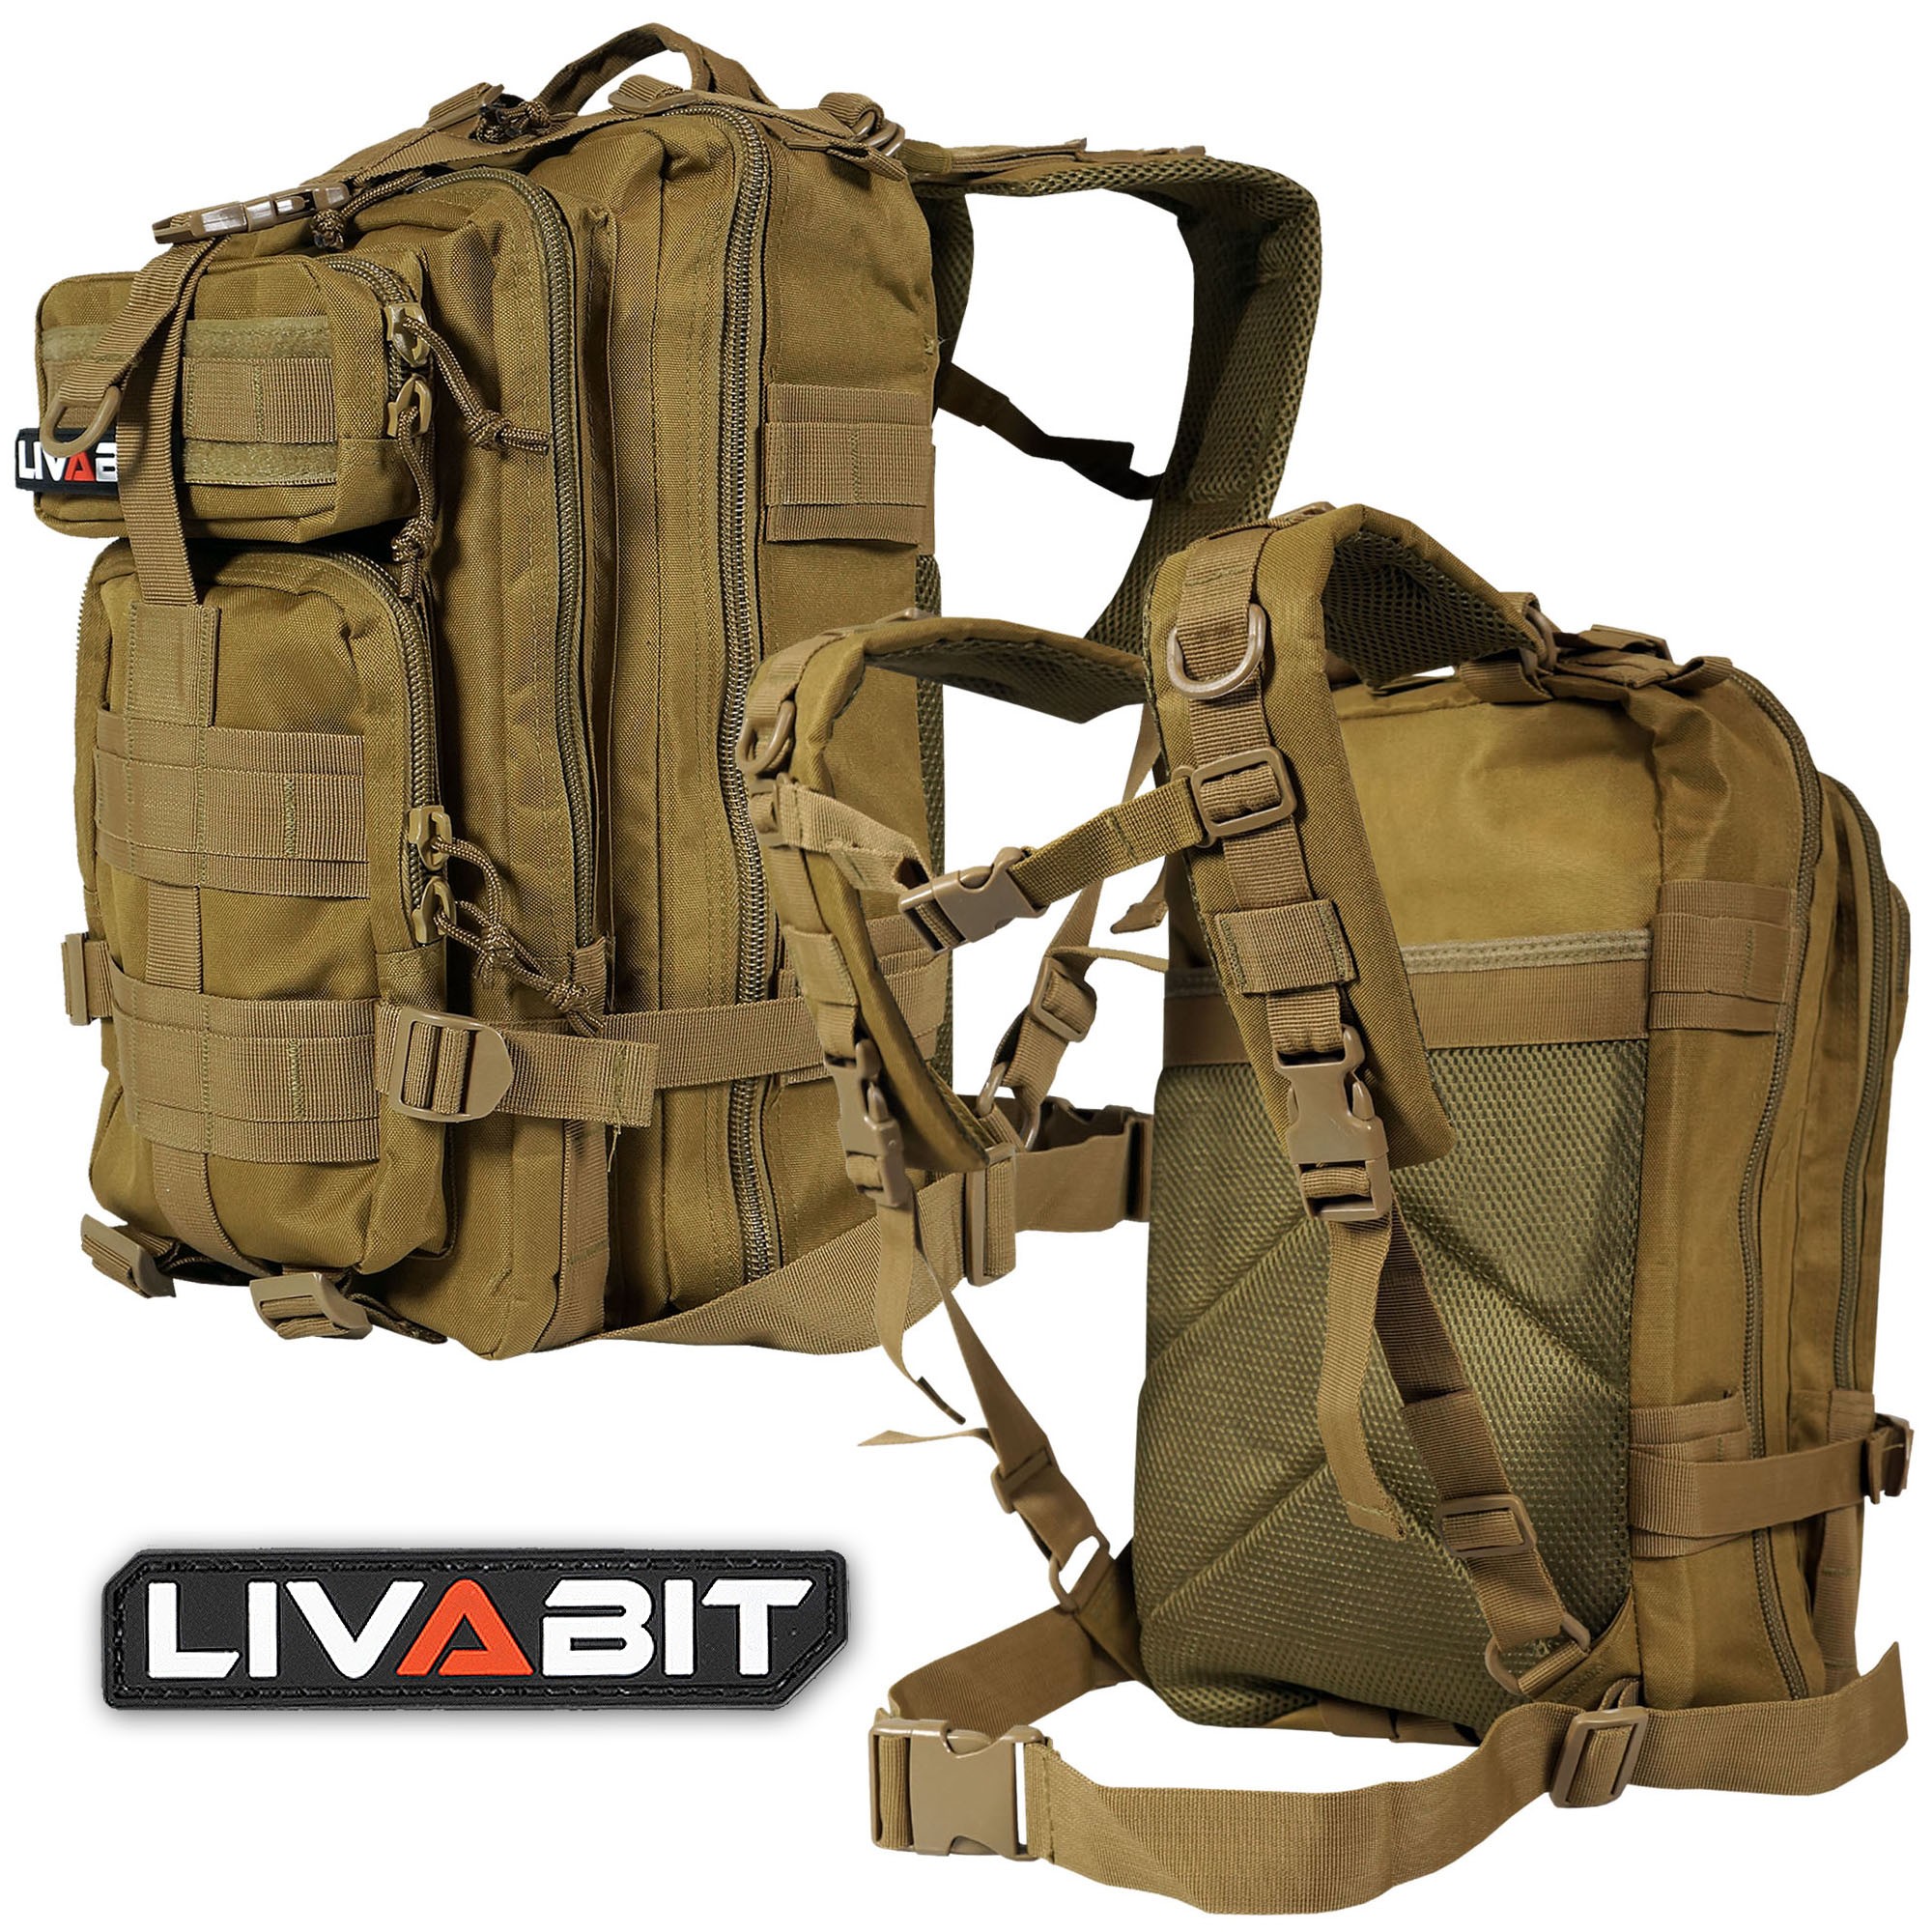 Livabit Tan Tactical EDC 3 Day Assault Bug out Bag Backpack Rucksack Carrier for sale online 